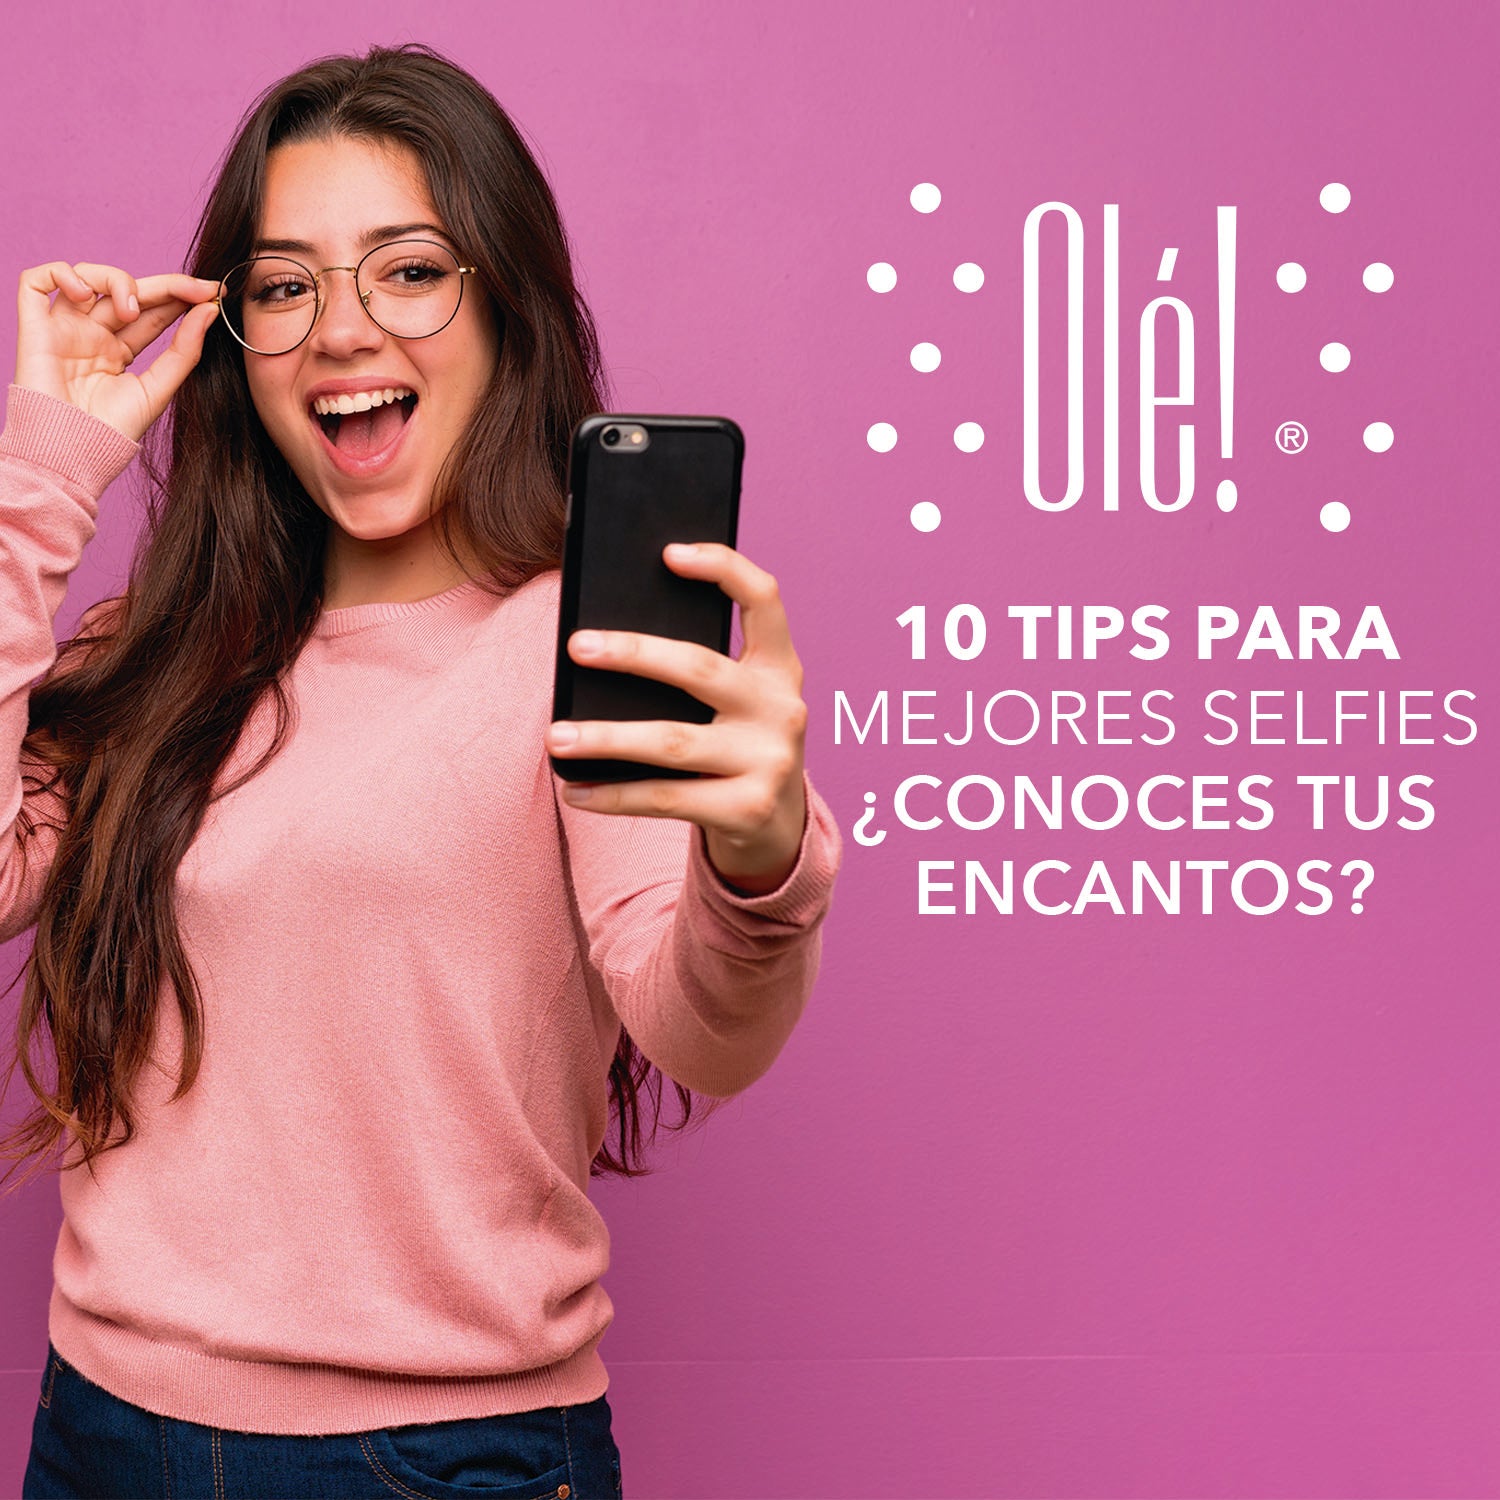 10 tips para tener mejores selfies ¿Conoces tus encantos?